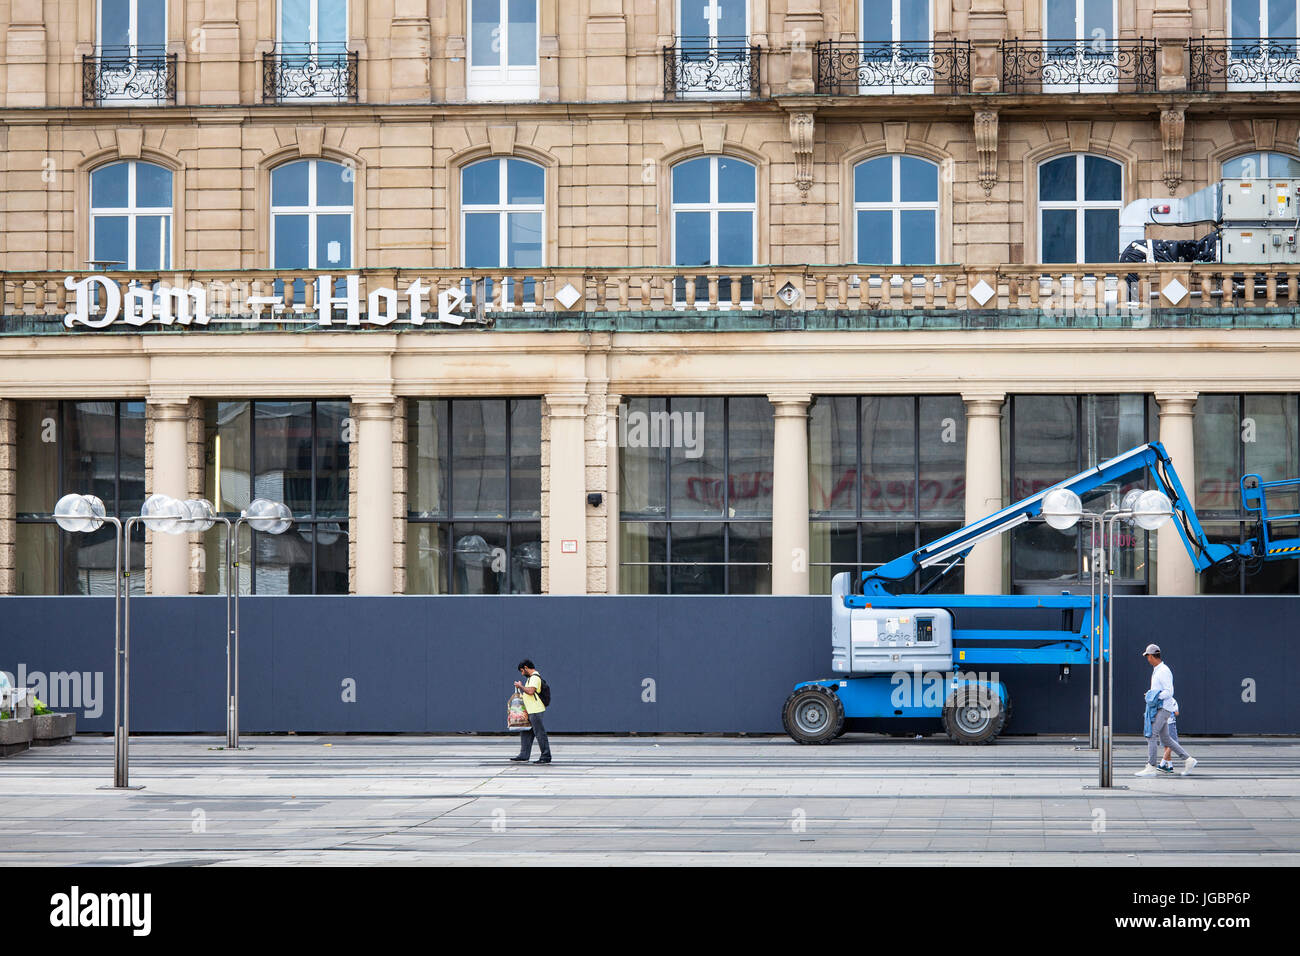 Allemagne, Cologne, plate-forme de travail mobile en face de l'Hôtel Dom abandonnés près de la cathédrale, l'hôtel est depuis des années une restructuration ruine. Banque D'Images